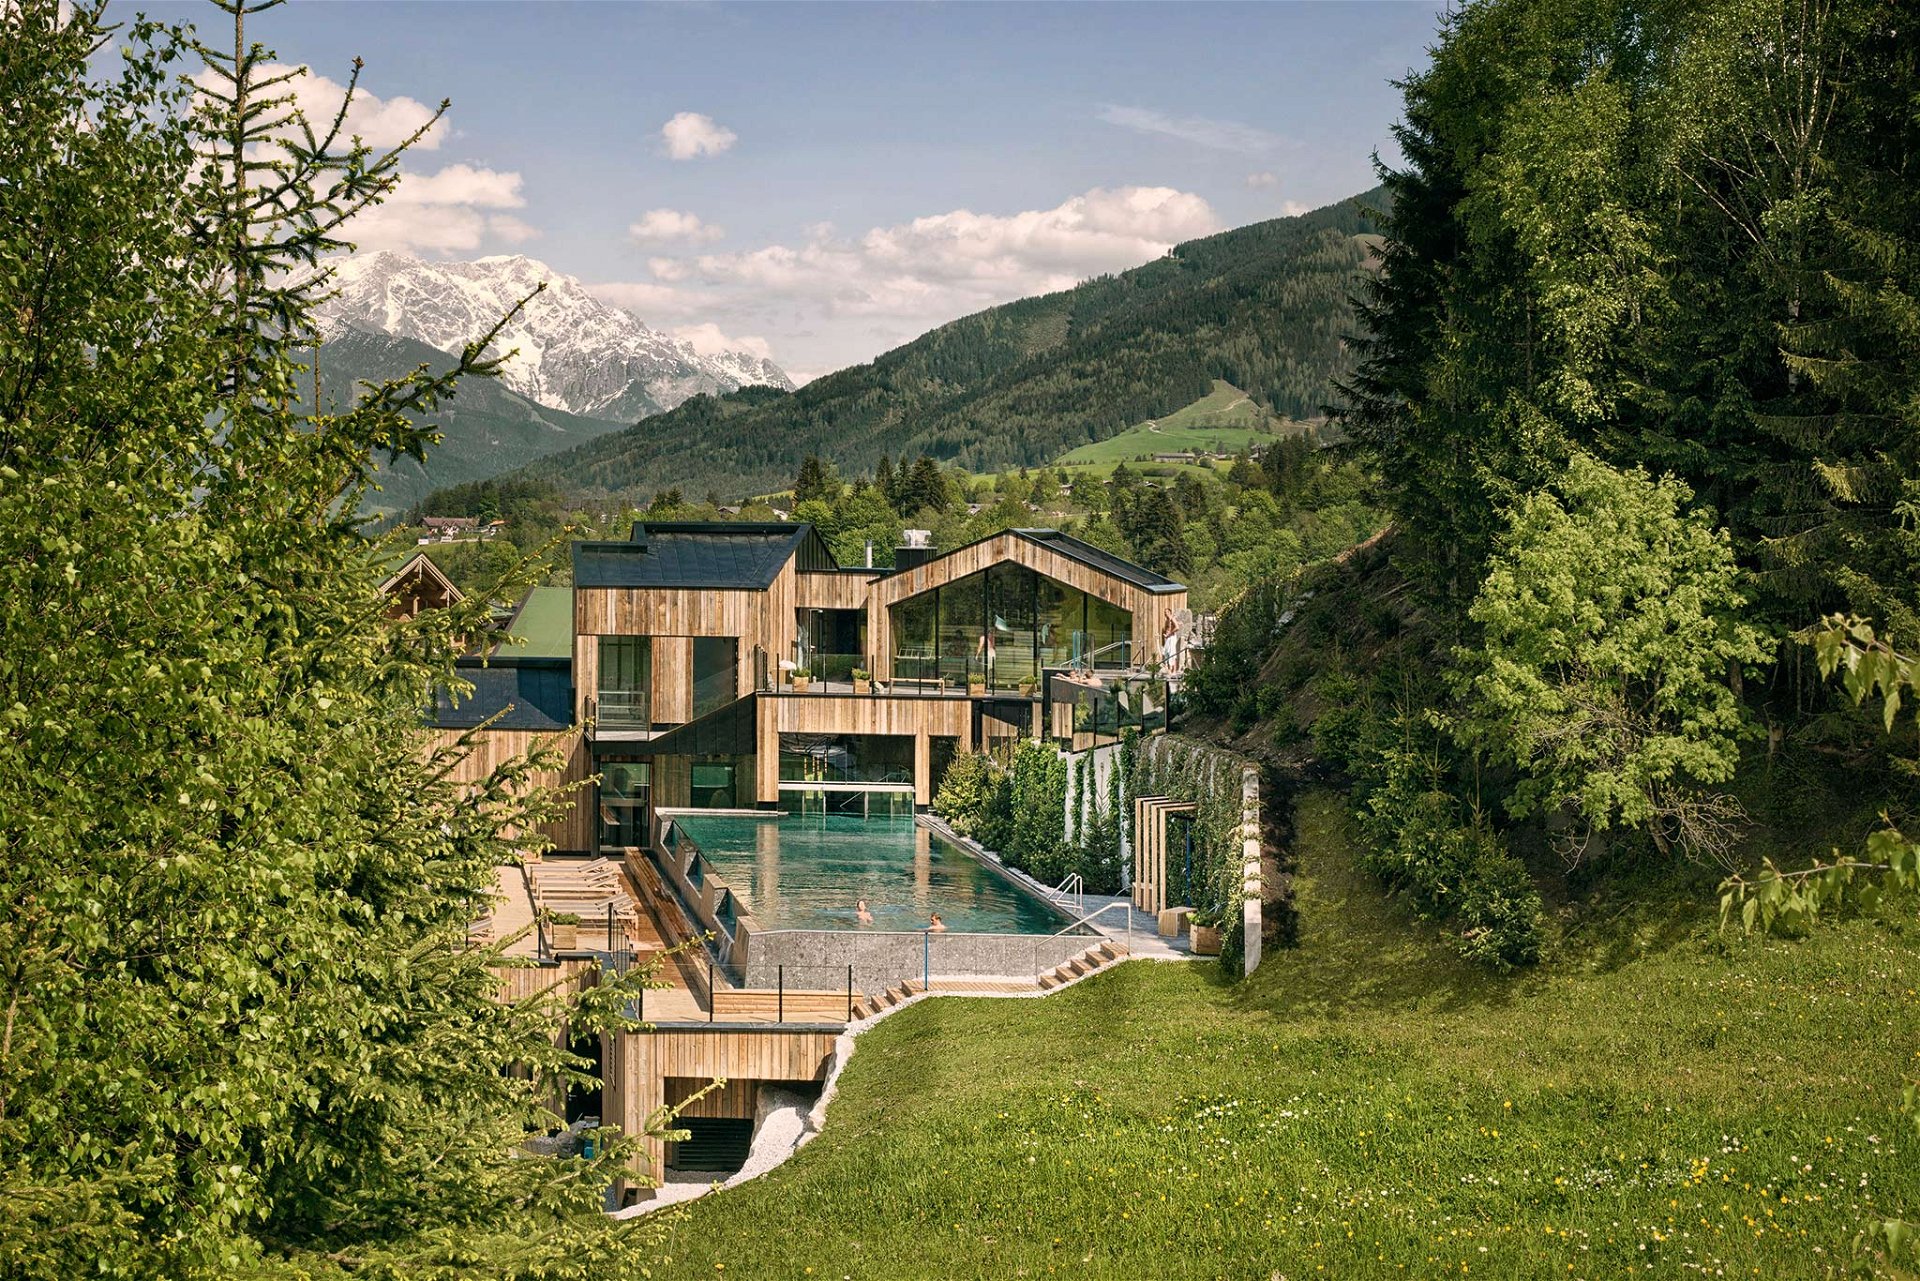 Ausspannen in der Natur Das »Forsthofgut« in Salzburg hat seine großzügige Wellness-Anlage erweitert. Jetzt gibt es neben einem neuen Infinity-Pool sogar einen japanischen Onsen. Und Suiten mit Privatsauna. forsthofgut.at

